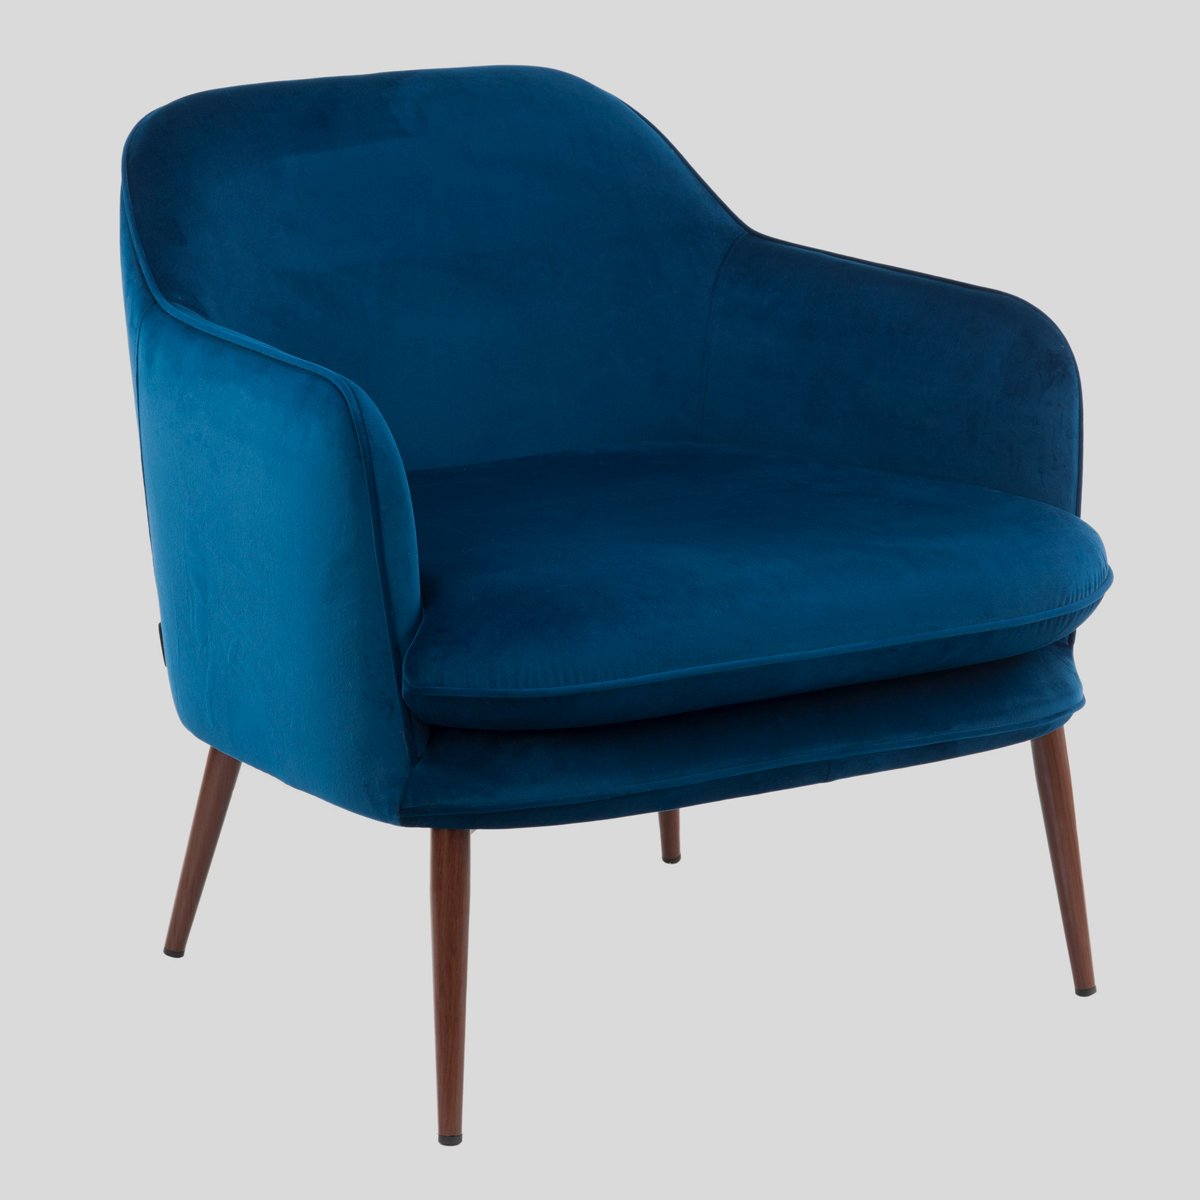 De rijke donkerblauwe kleur van deze fluwelen fauteuil geeft ‘m een nog chiquere look. 